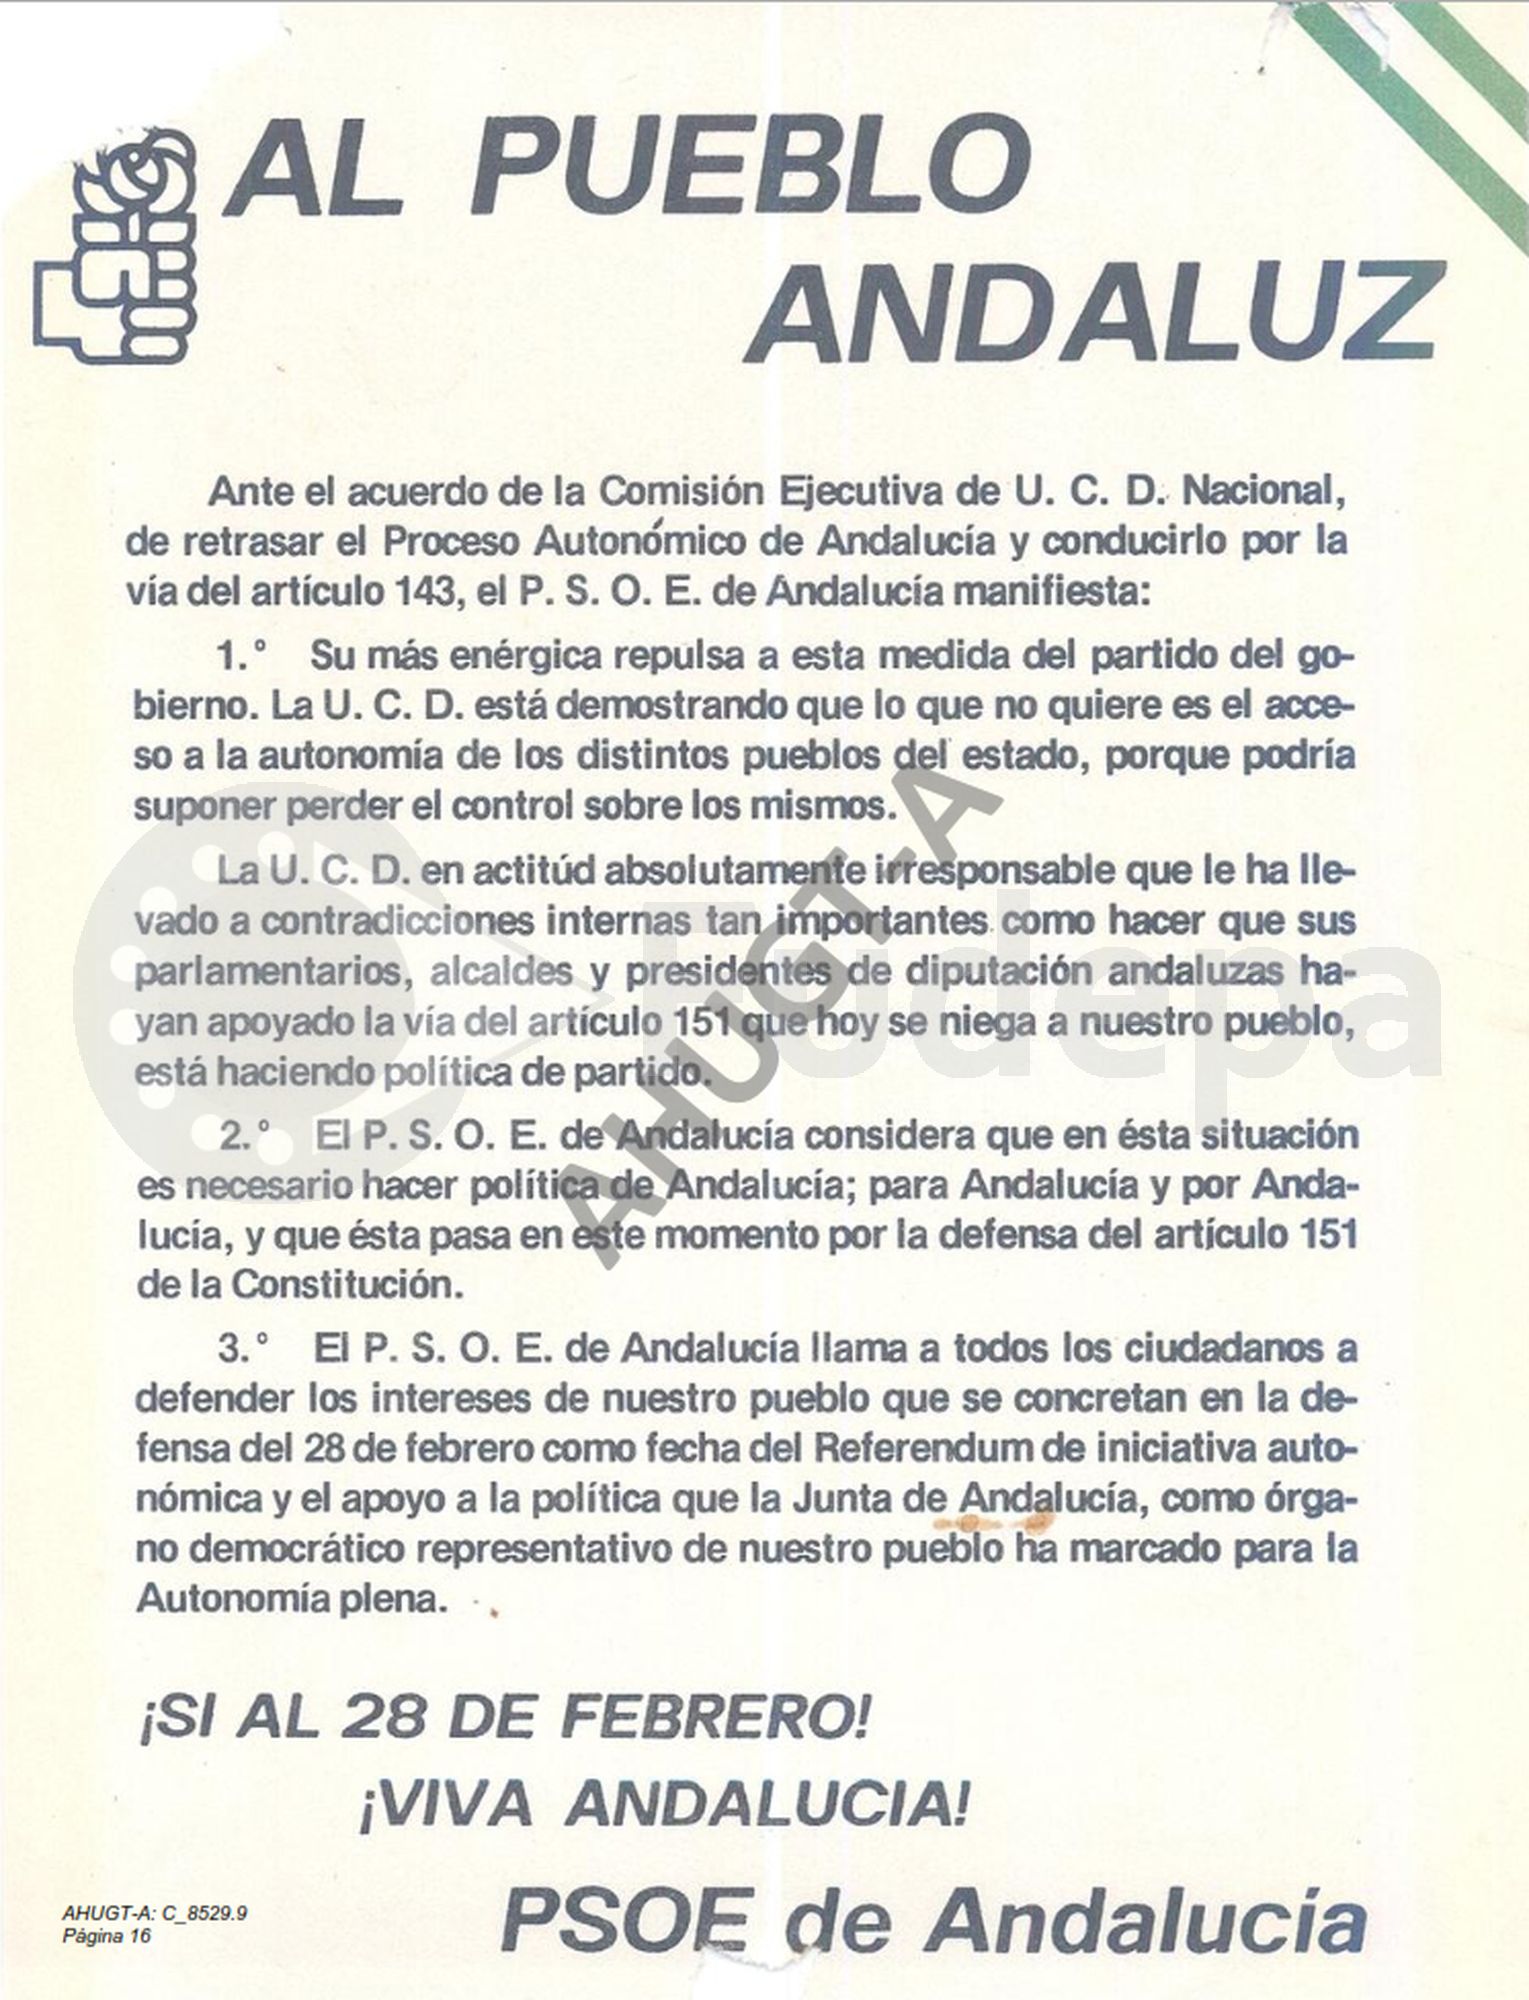 Comunicado del PSOE de Andalucía al pueblo andaluz defendiendo el acceso a la autonomía por el artículo 151 de la Constitución